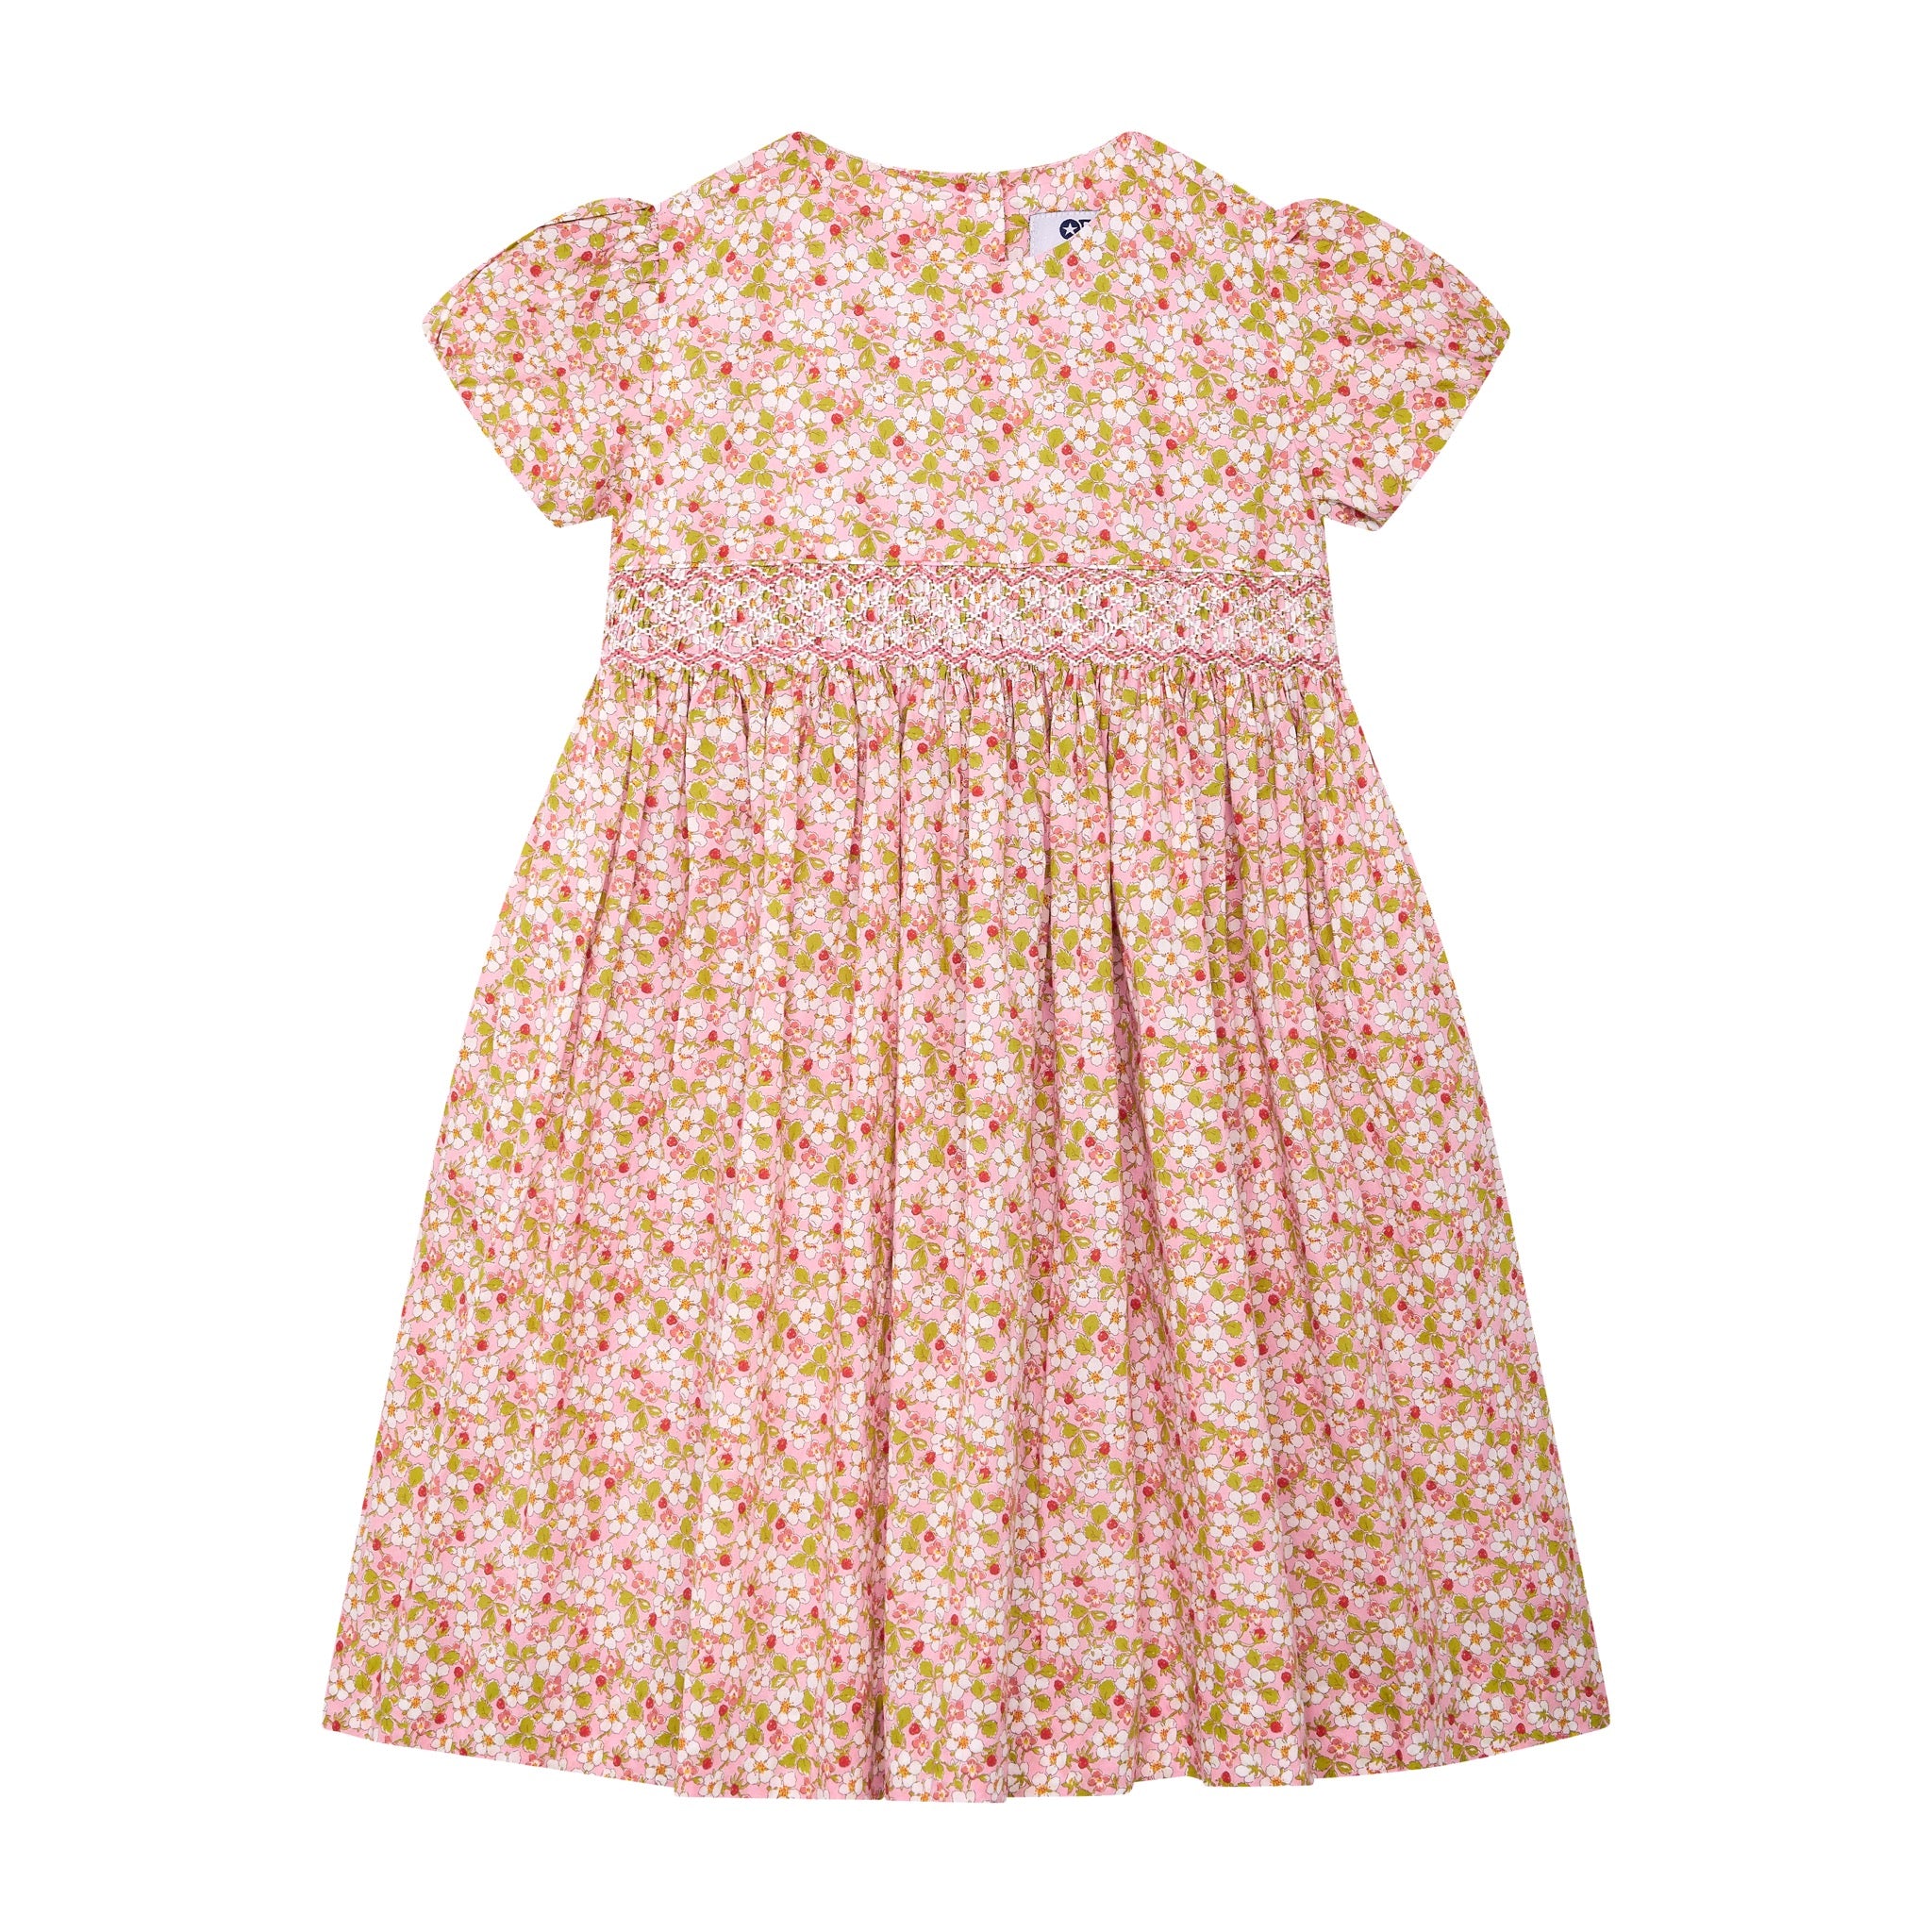 Liberty print dress, strawberry pattern, pink, front